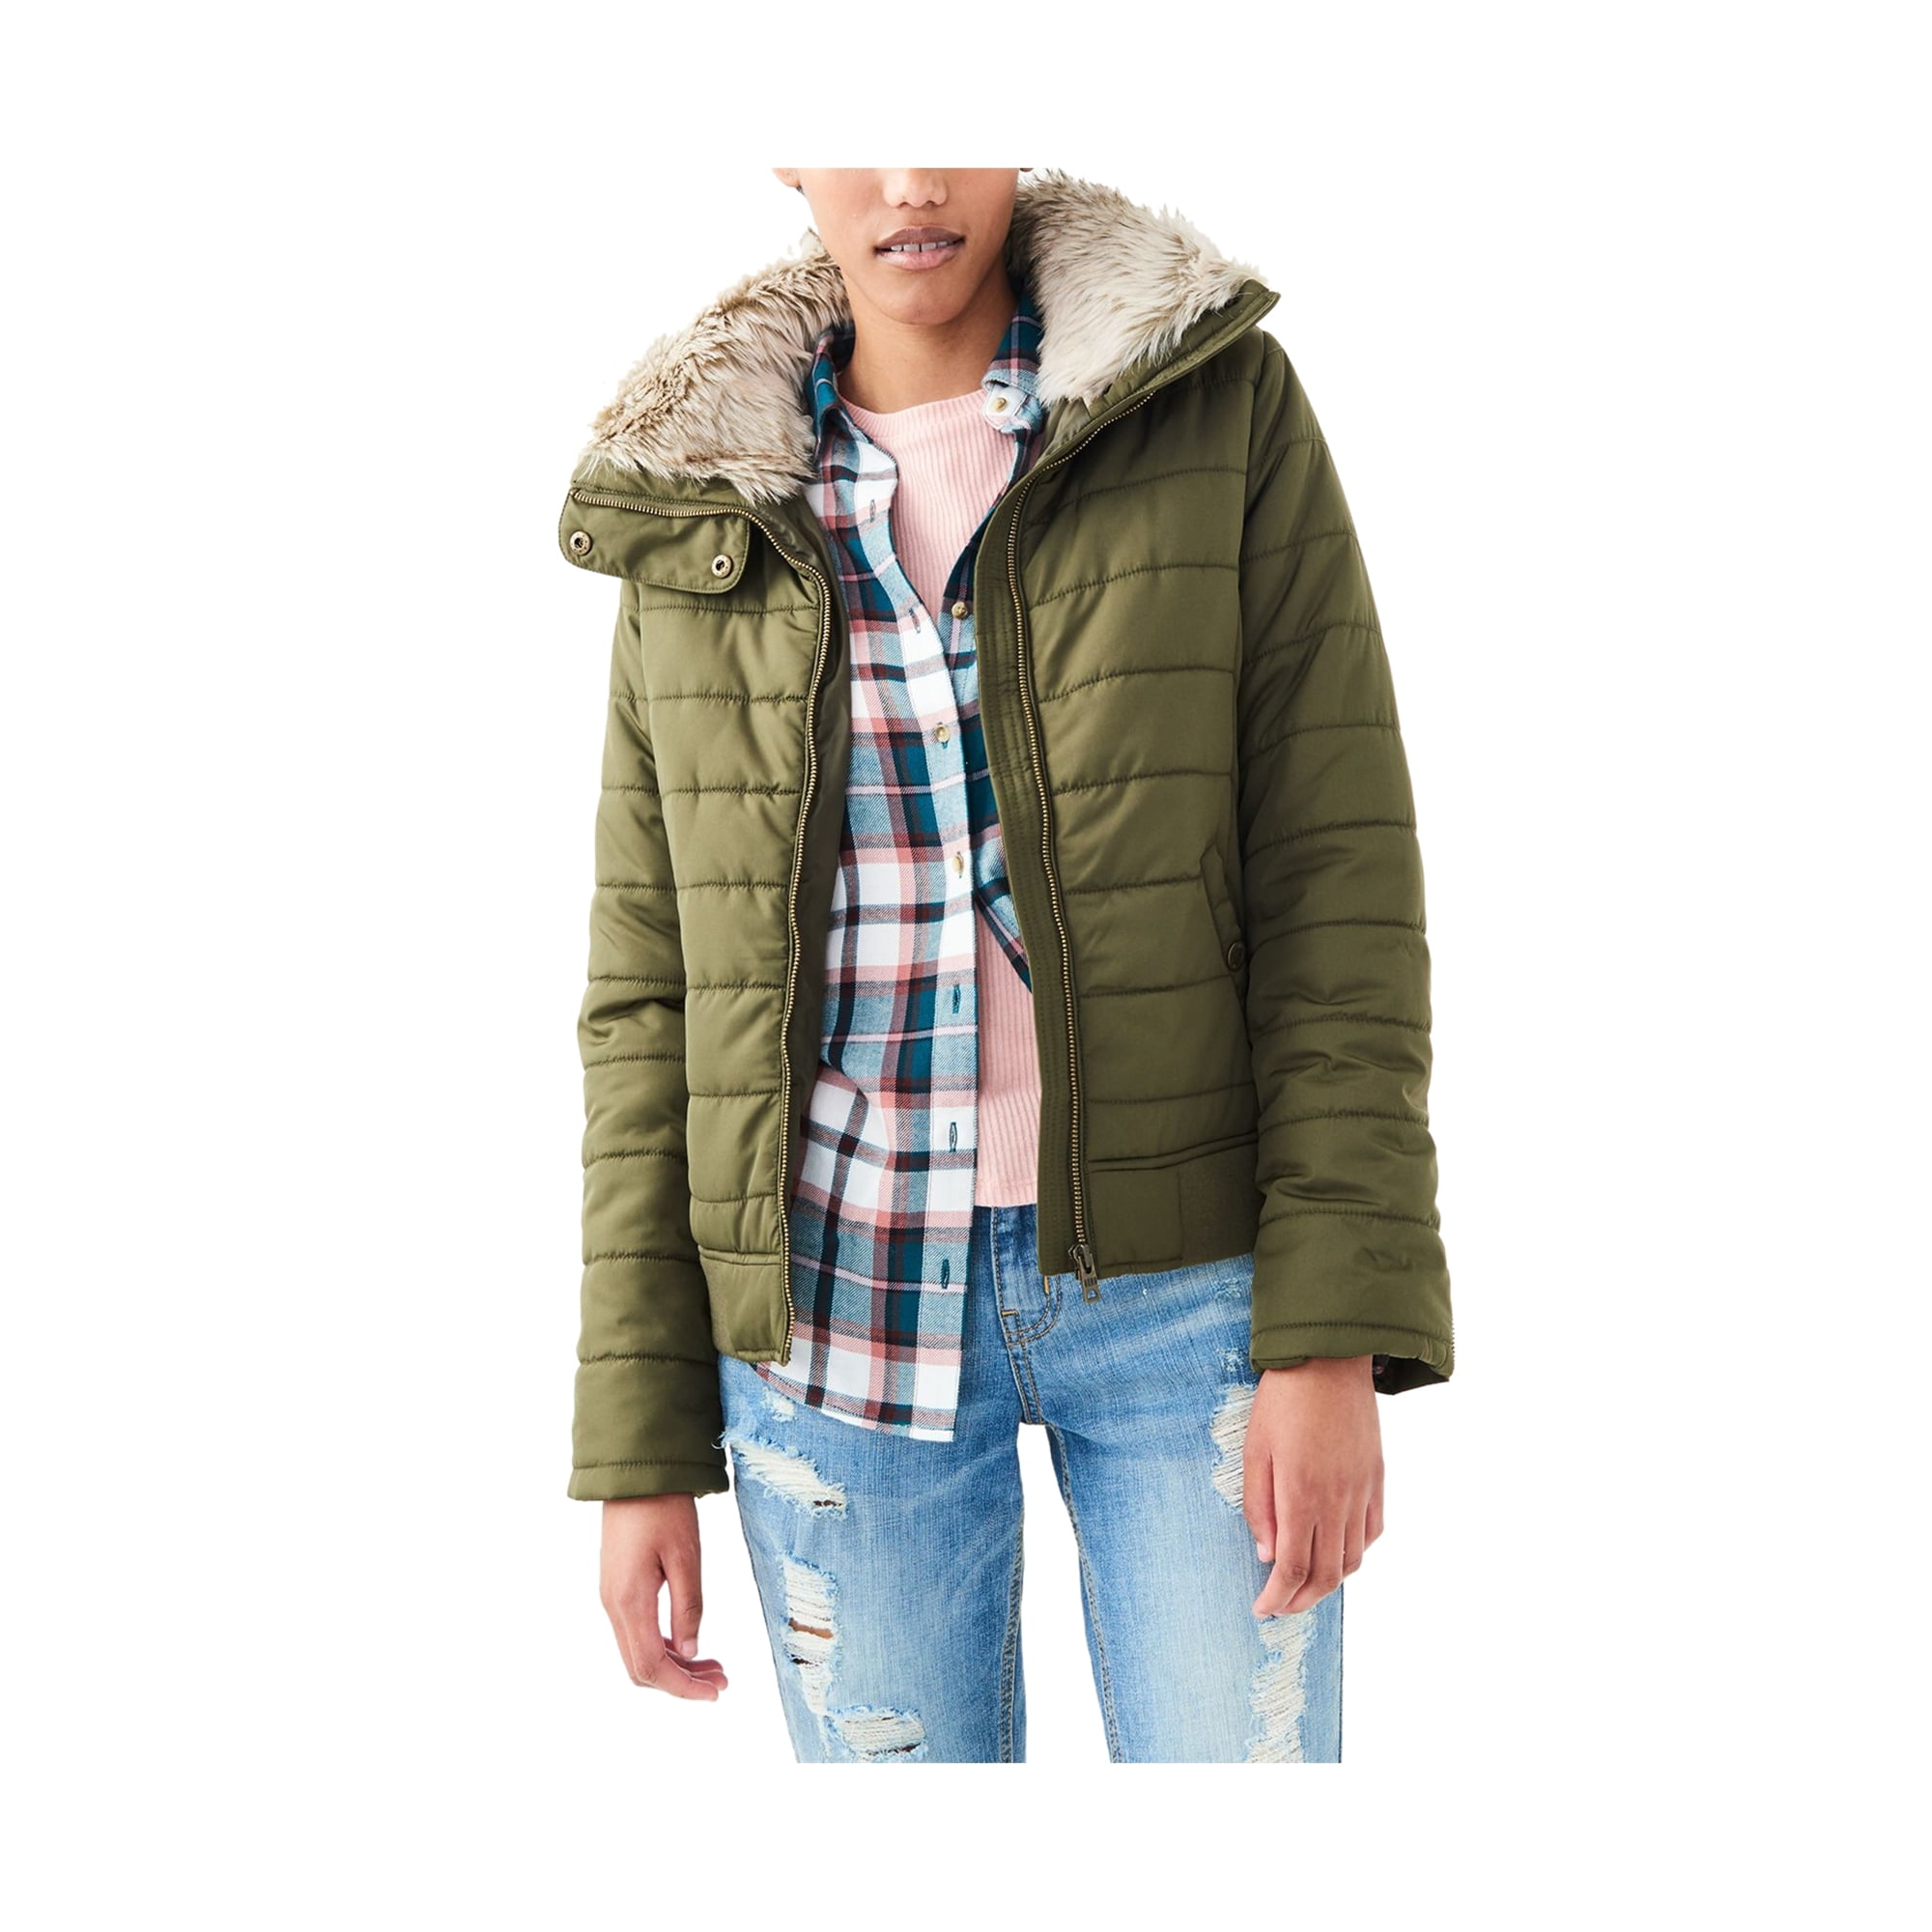 GloryA Womens Winter Solid Zip Hooded Down Jacket Parka Coat Outwear 